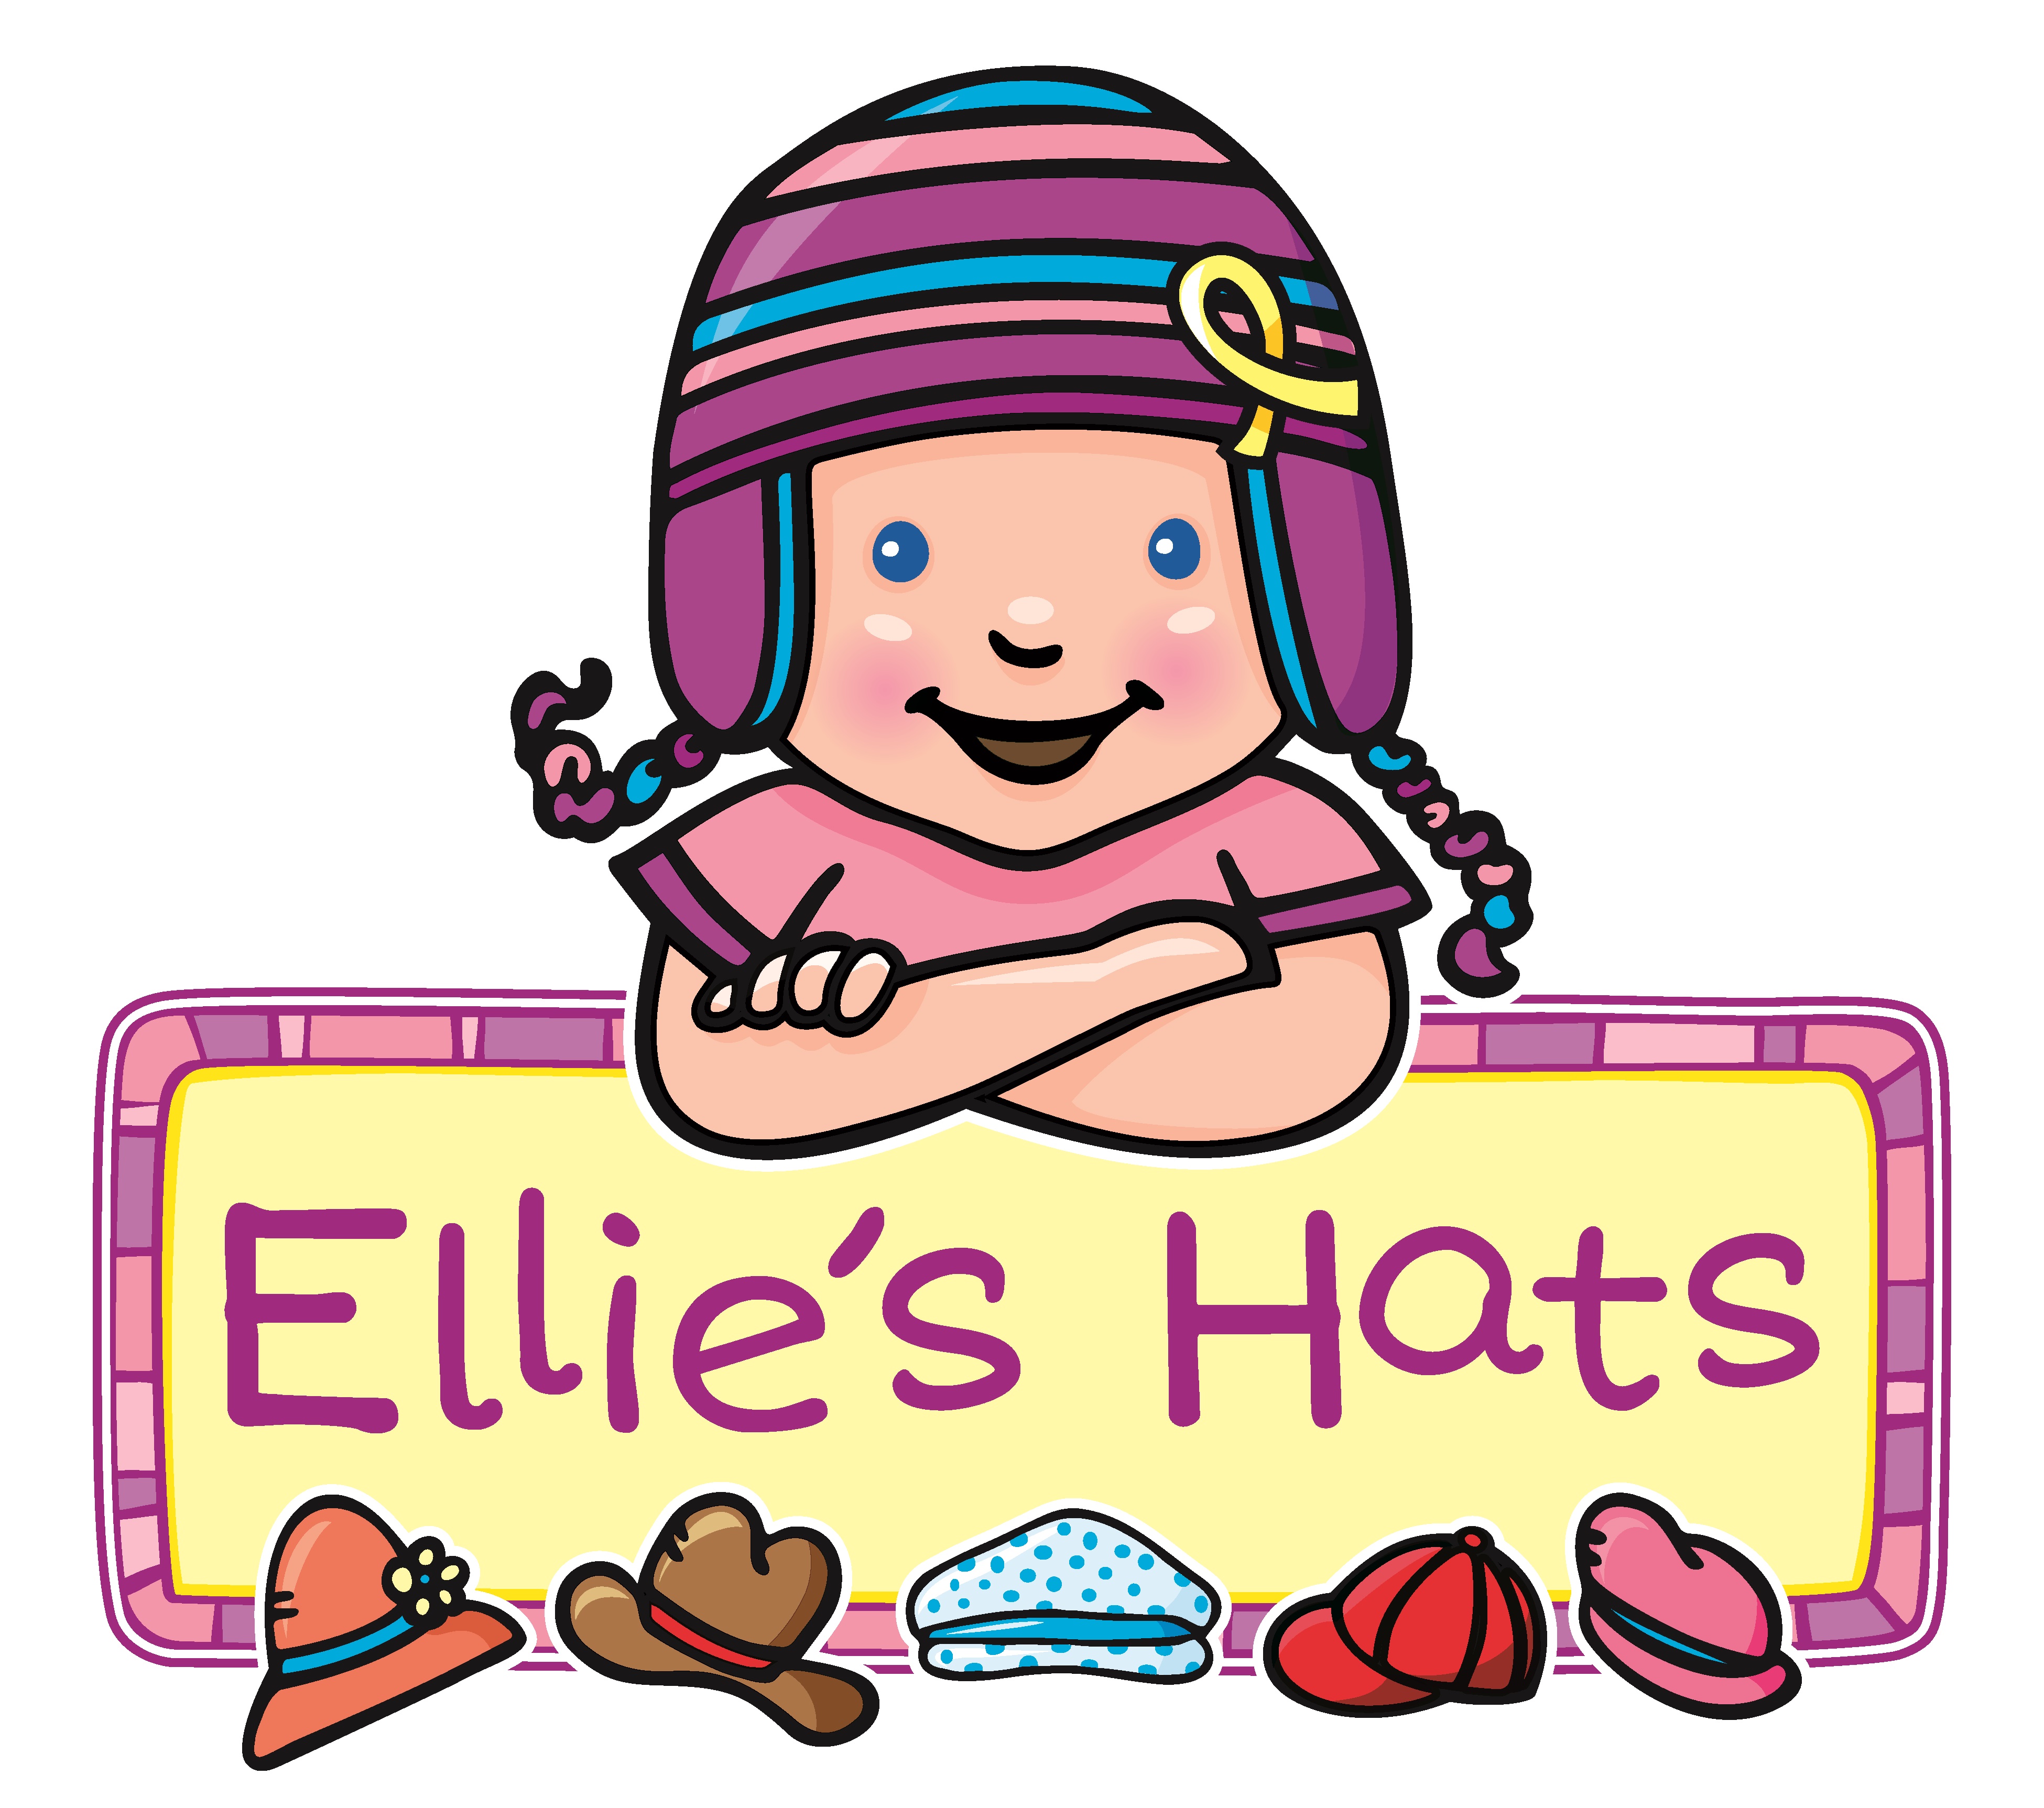 Ellie’s Hats